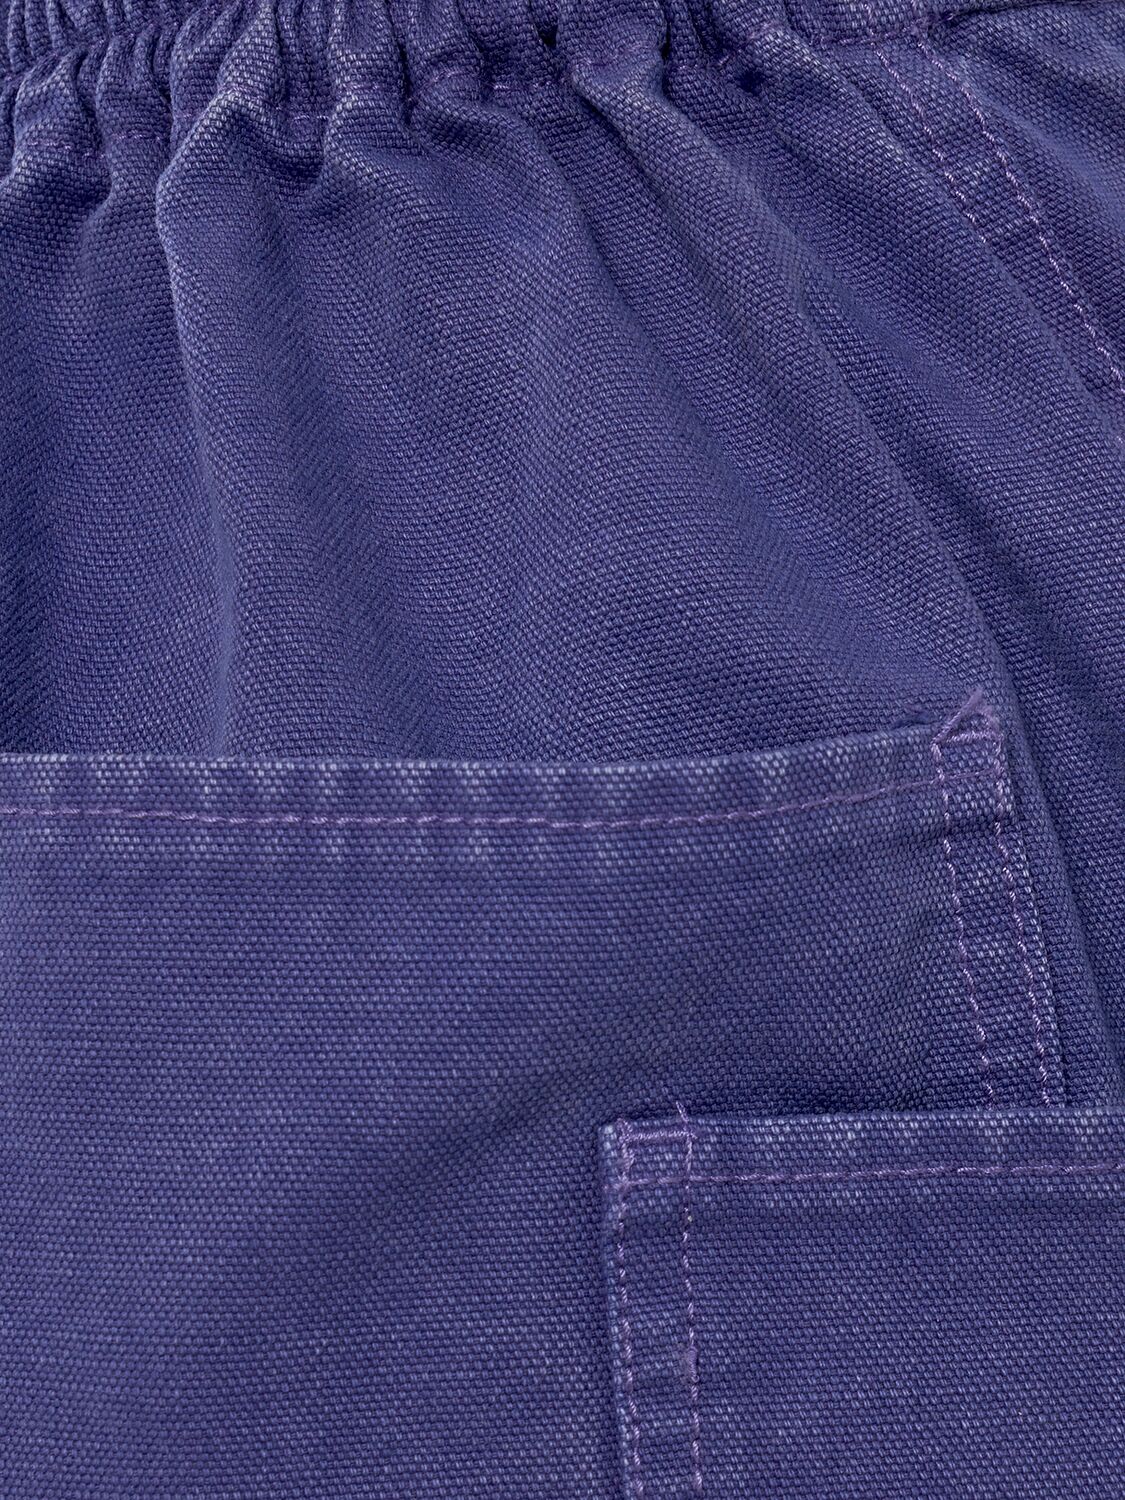 Shop Max Mara Cardiff Cotton Canvas Midi Pencil Skirt In Purple